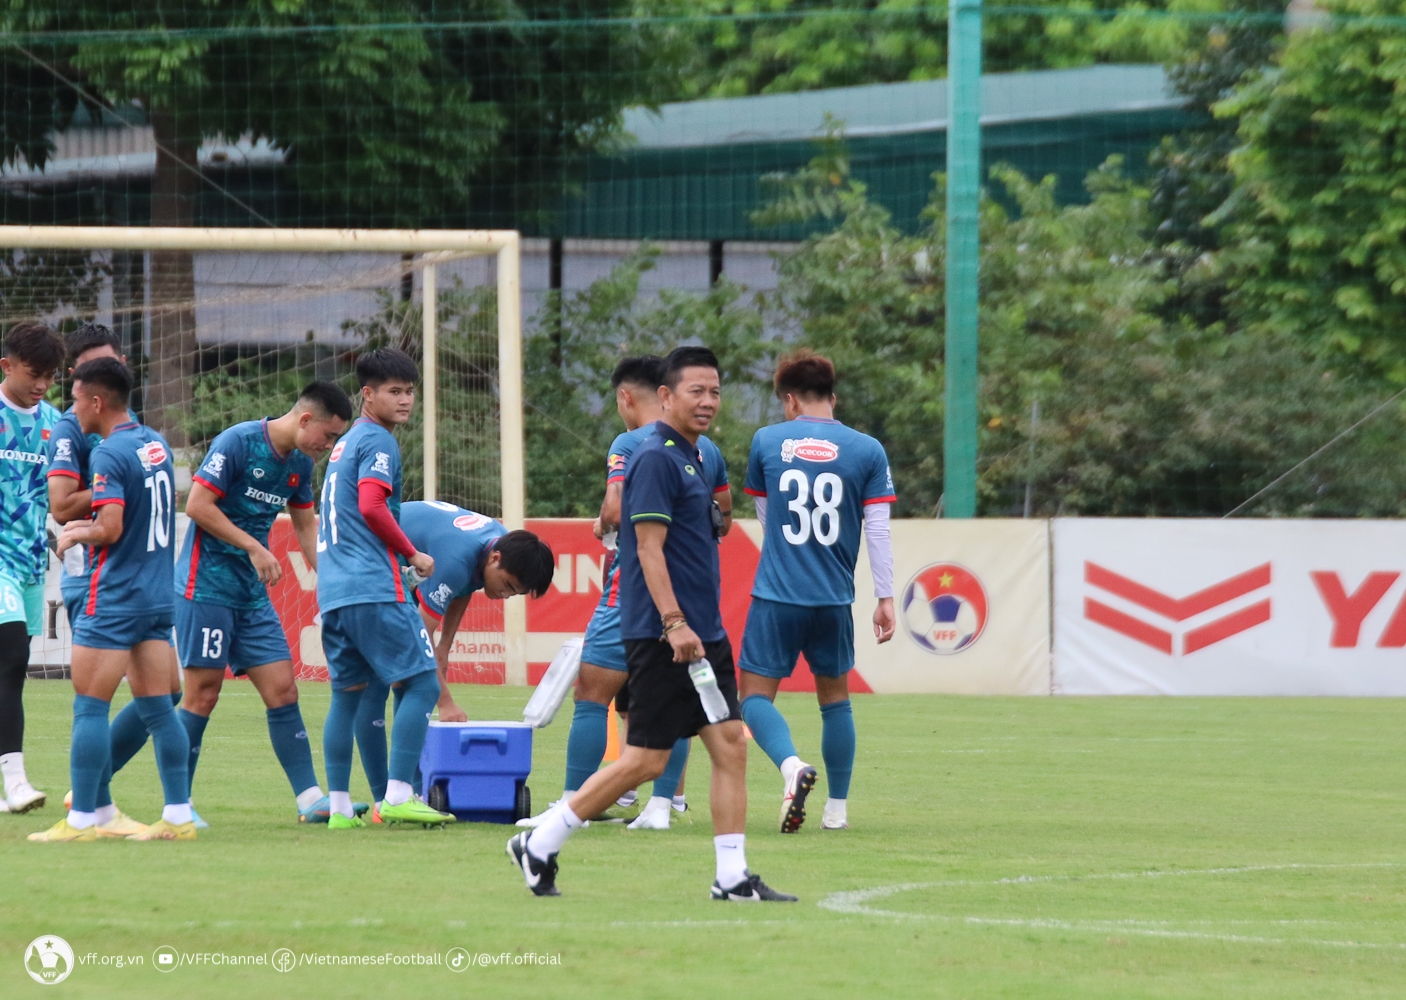 HLV Hoàng Anh Tuấn cùng các cầu thủ U23 Việt Nam tập luyện (Ành VFF)